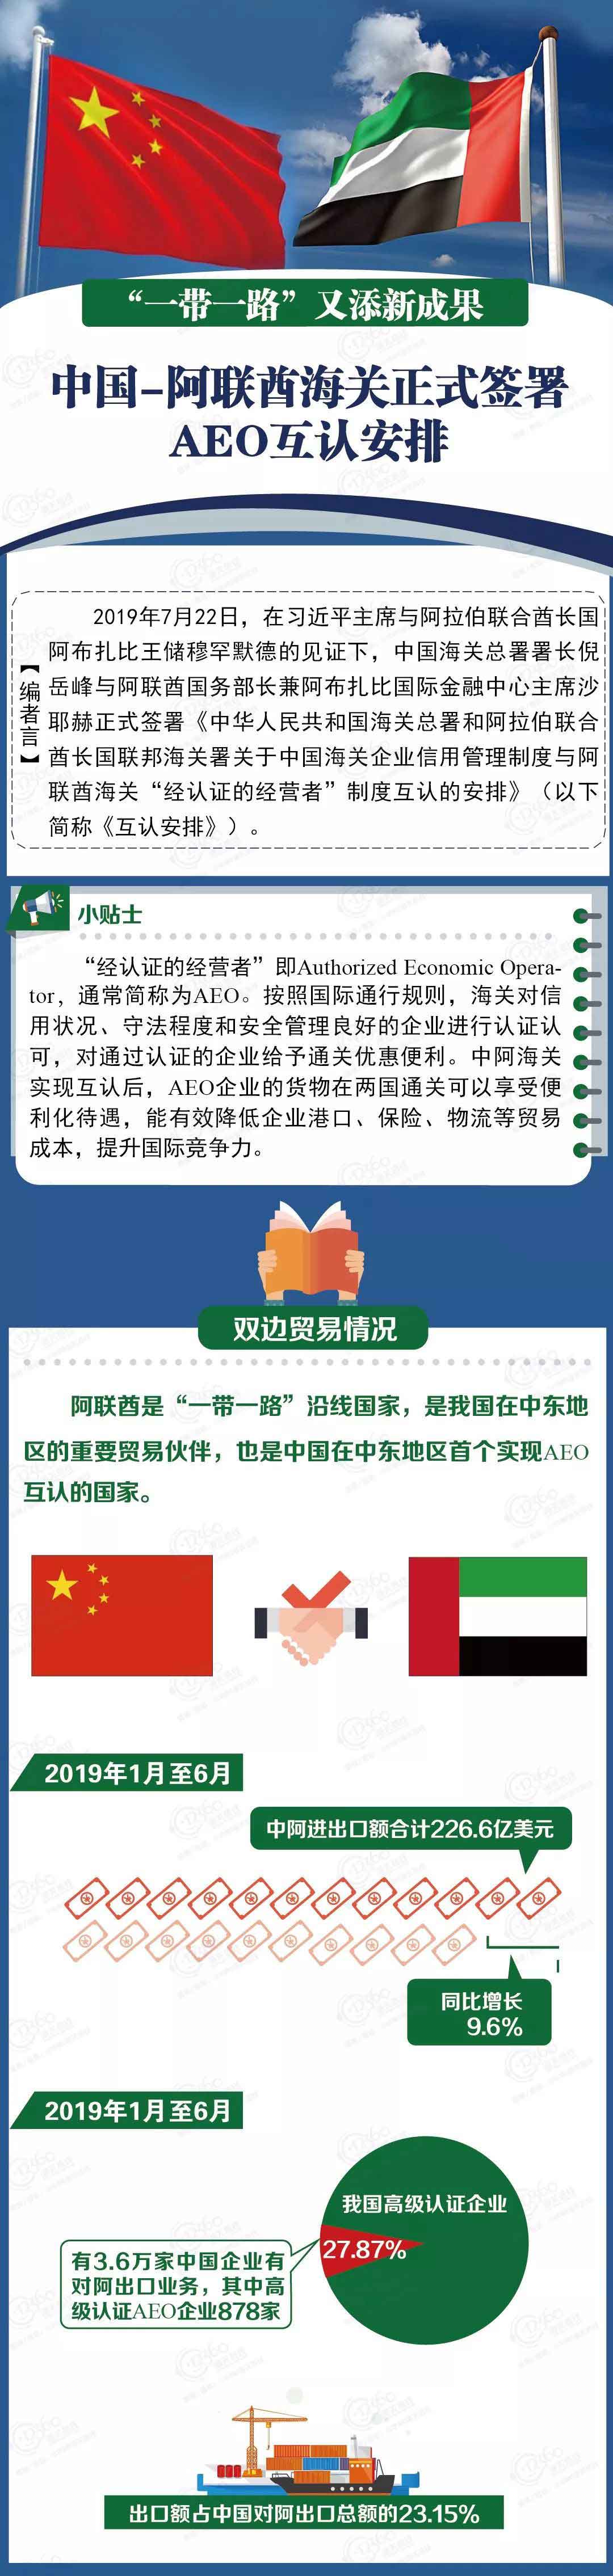 一路一带新成员,中国—阿联酋海关正式签署AEO互认安排